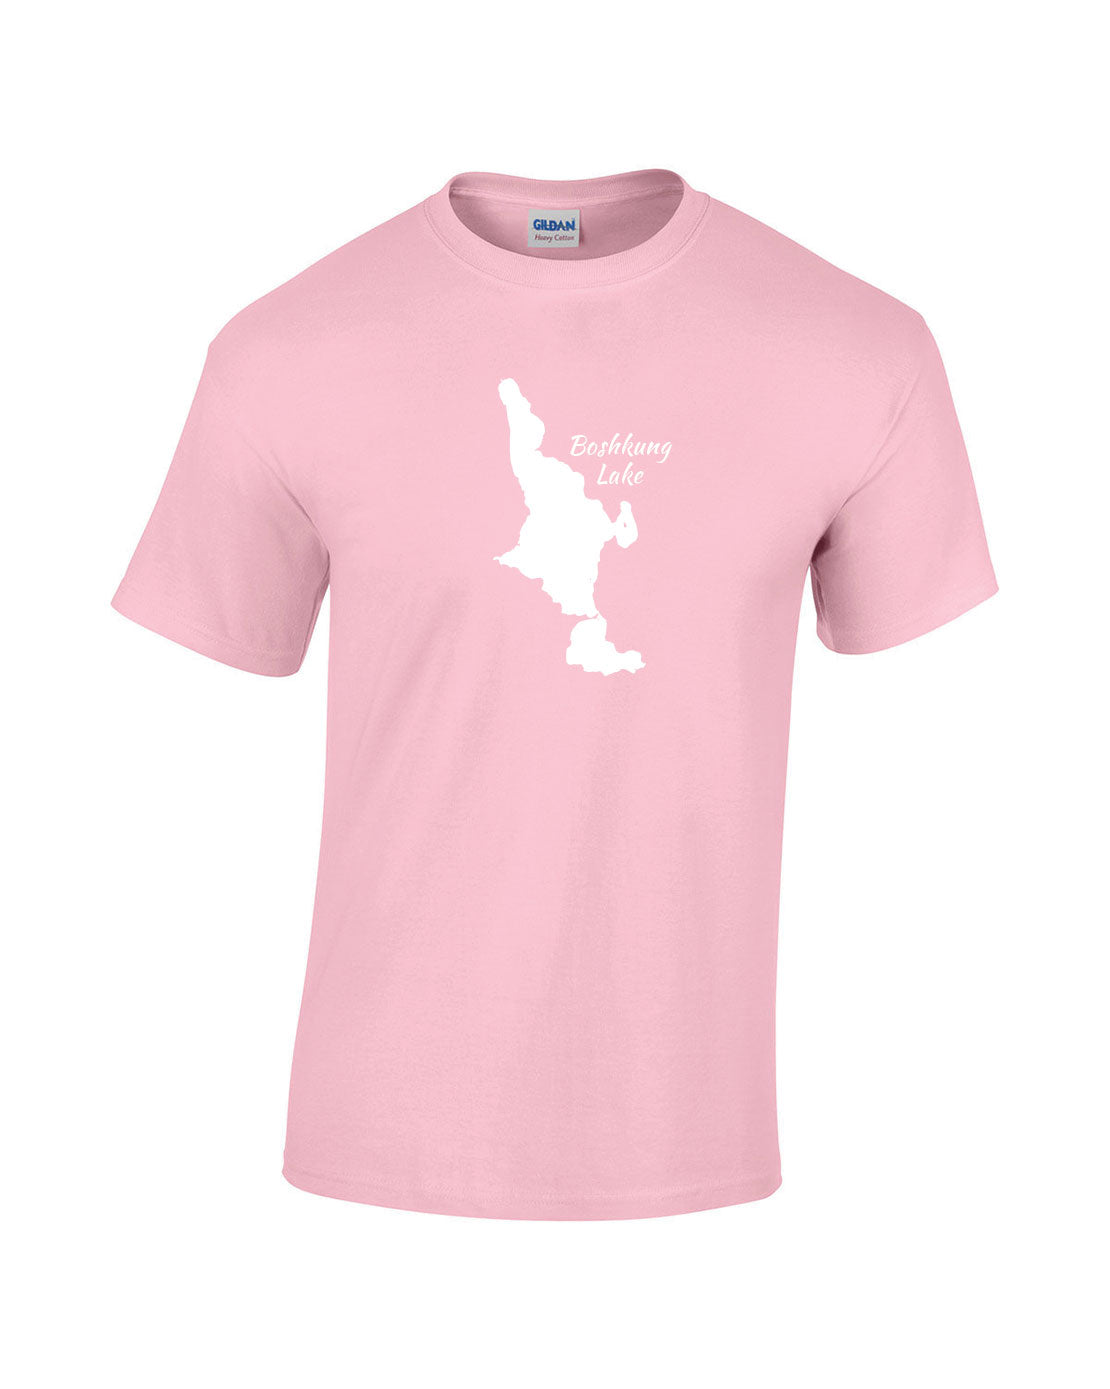 Boshkung Lake T-Shirt